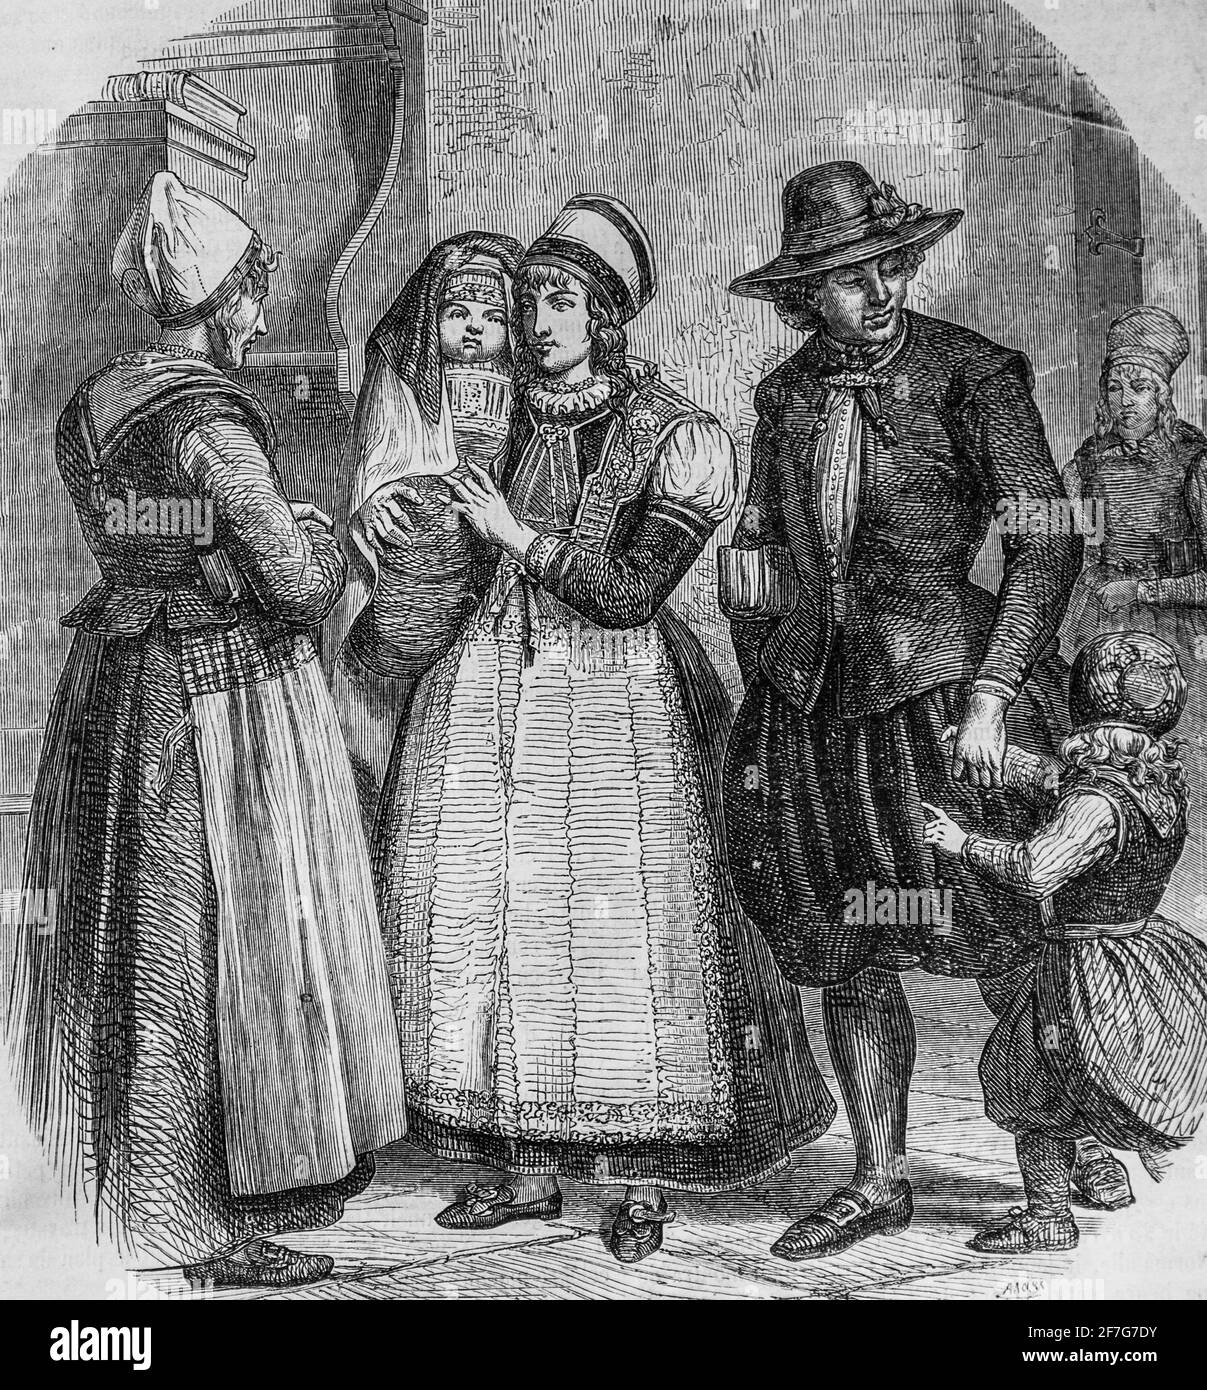 Kostüm des Habitants de l'ile de marken dans le zuyderzee ,le Magazine pitoresque par edouard charton,1870 Stockfoto